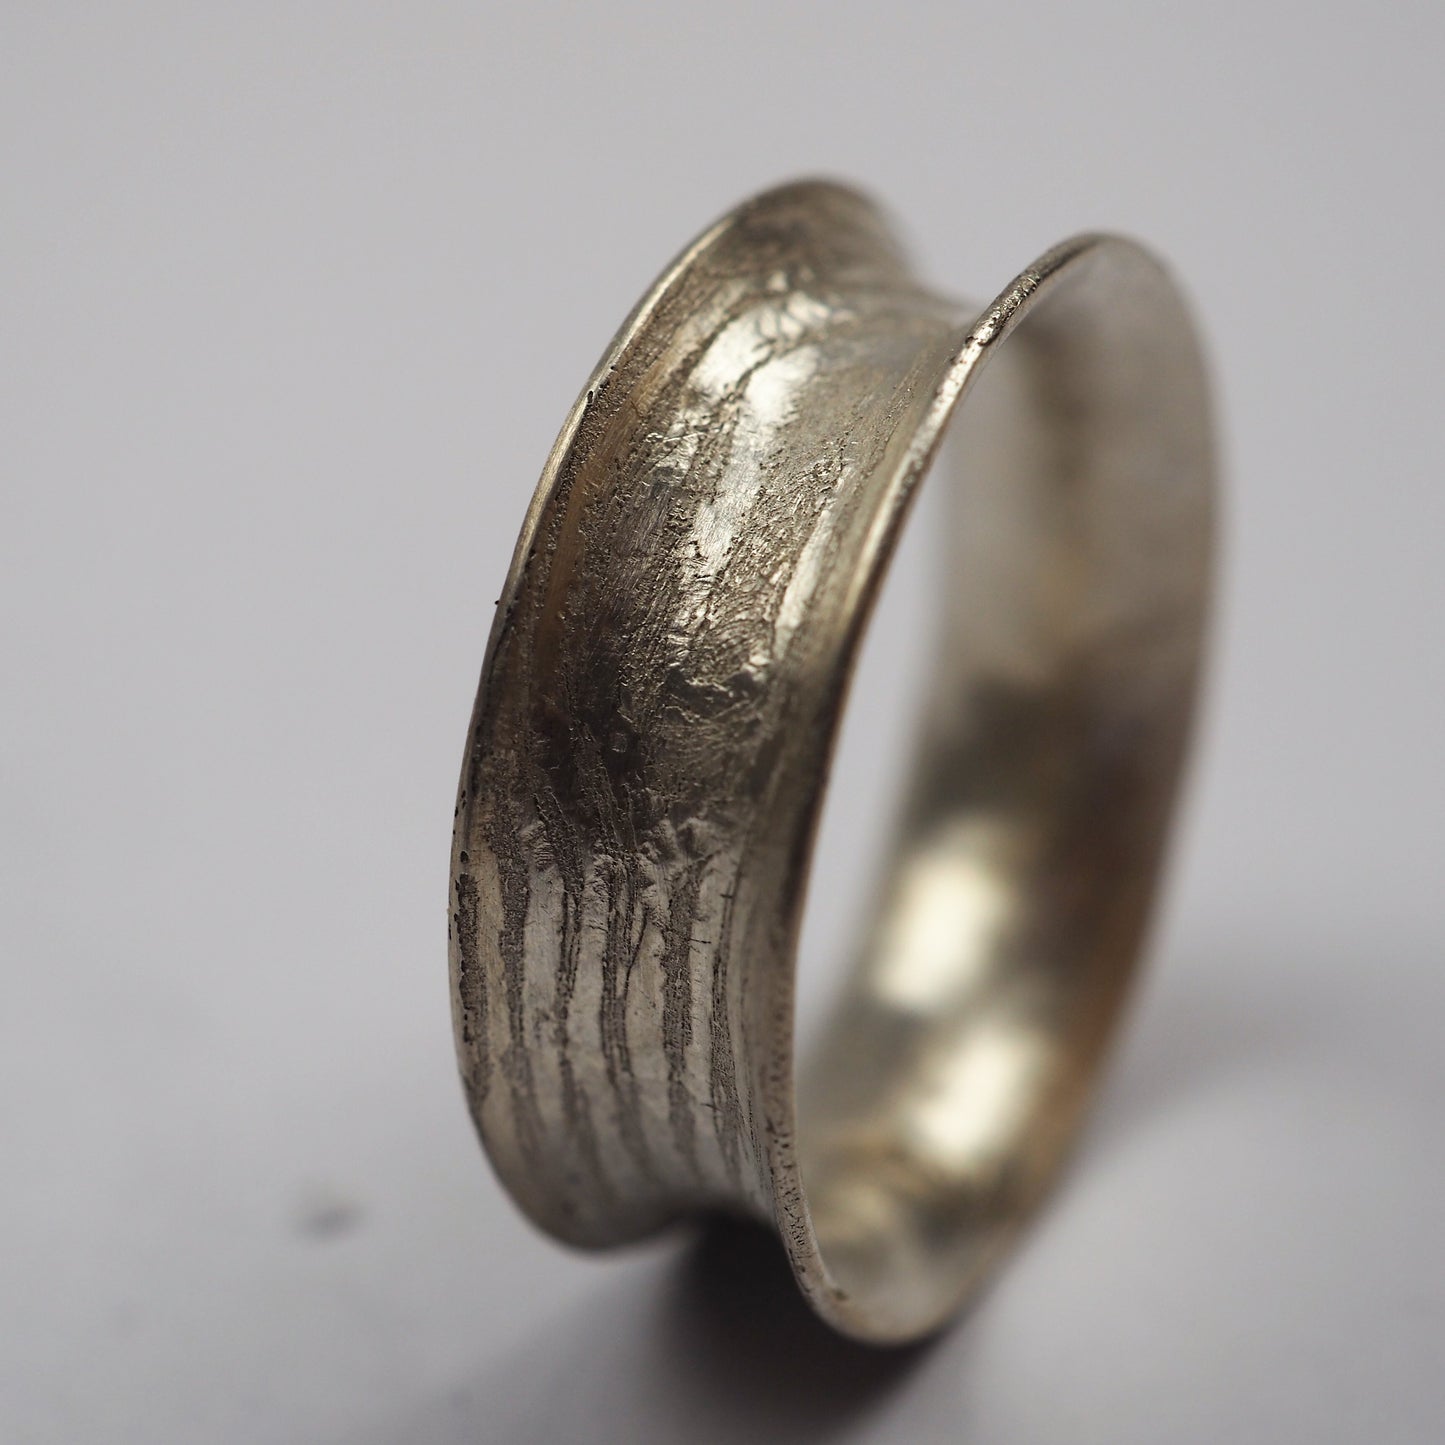 Ilett, Rebecca - Small Silver Ring